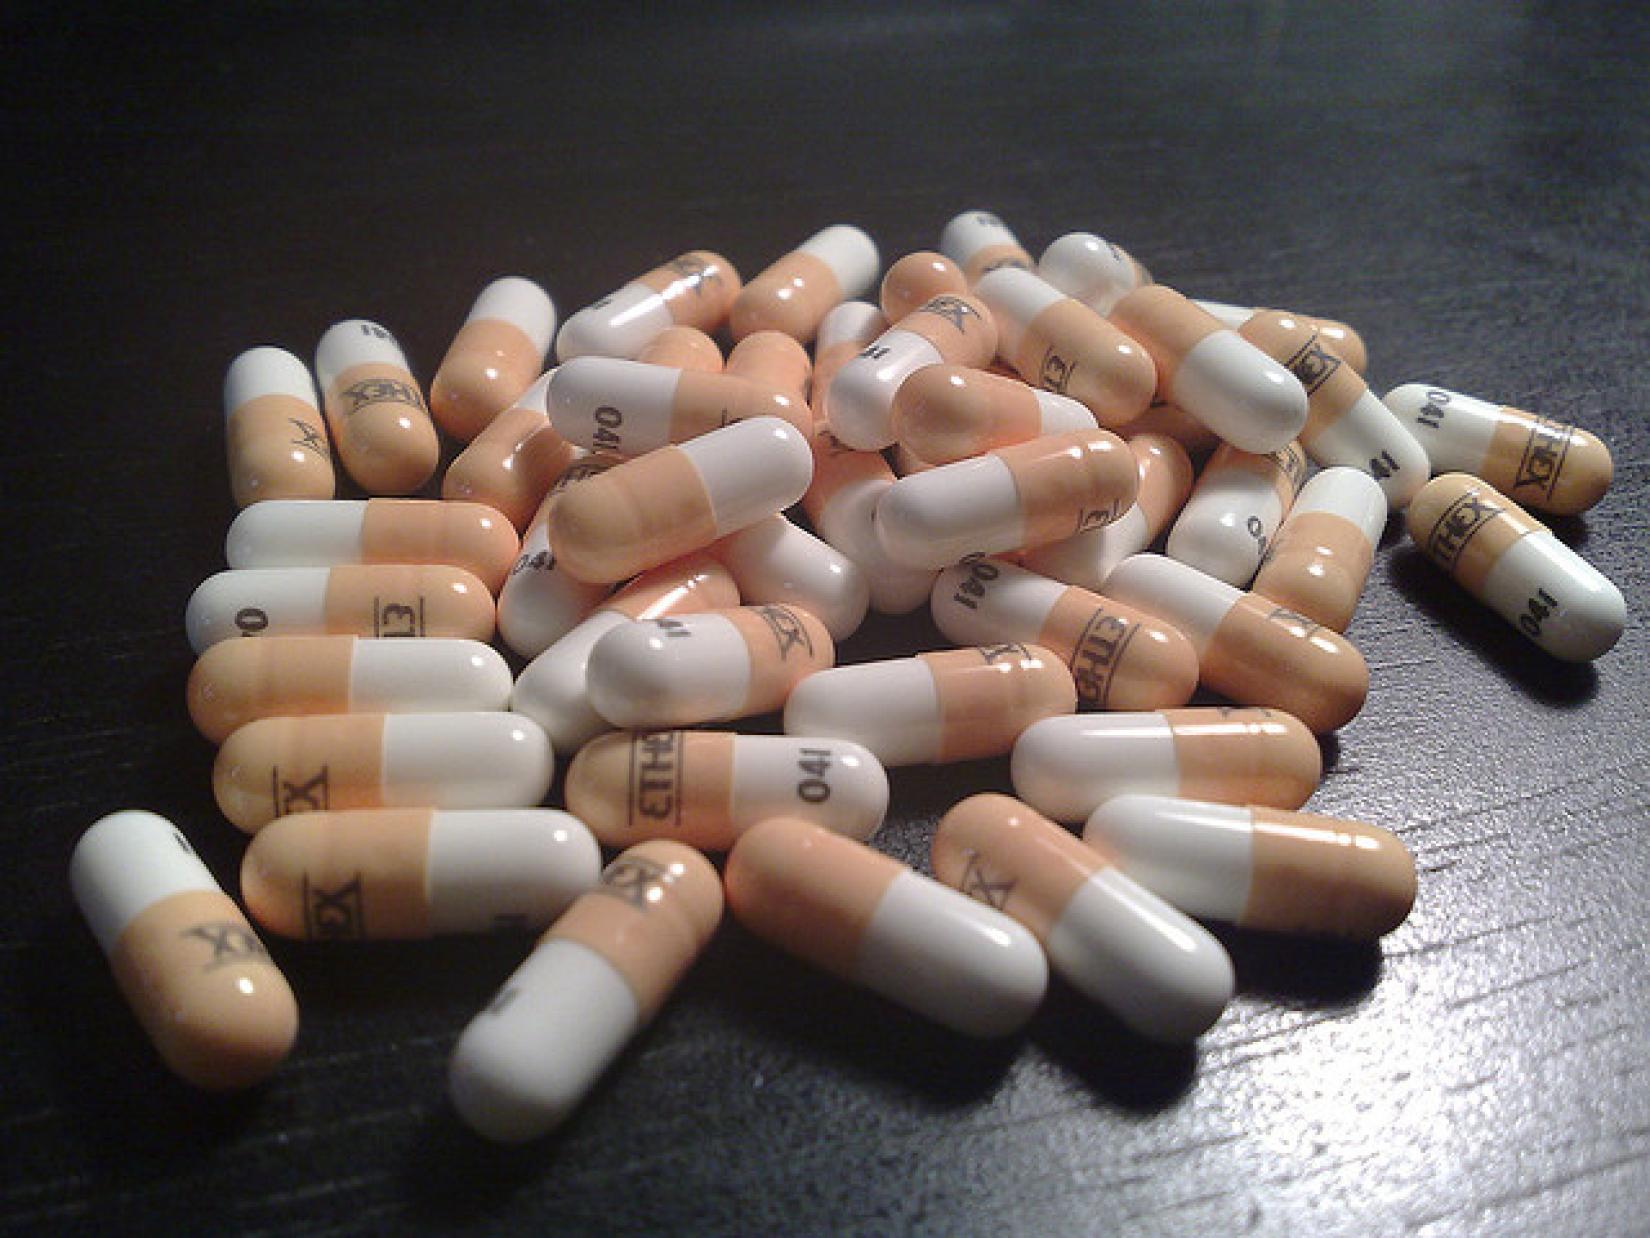 Oxicodona é um fármaco opioide analgésico usado para tratamento de dor moderada a intensa. Foto: Flickr/Be.Futureproof (Creative Commons)